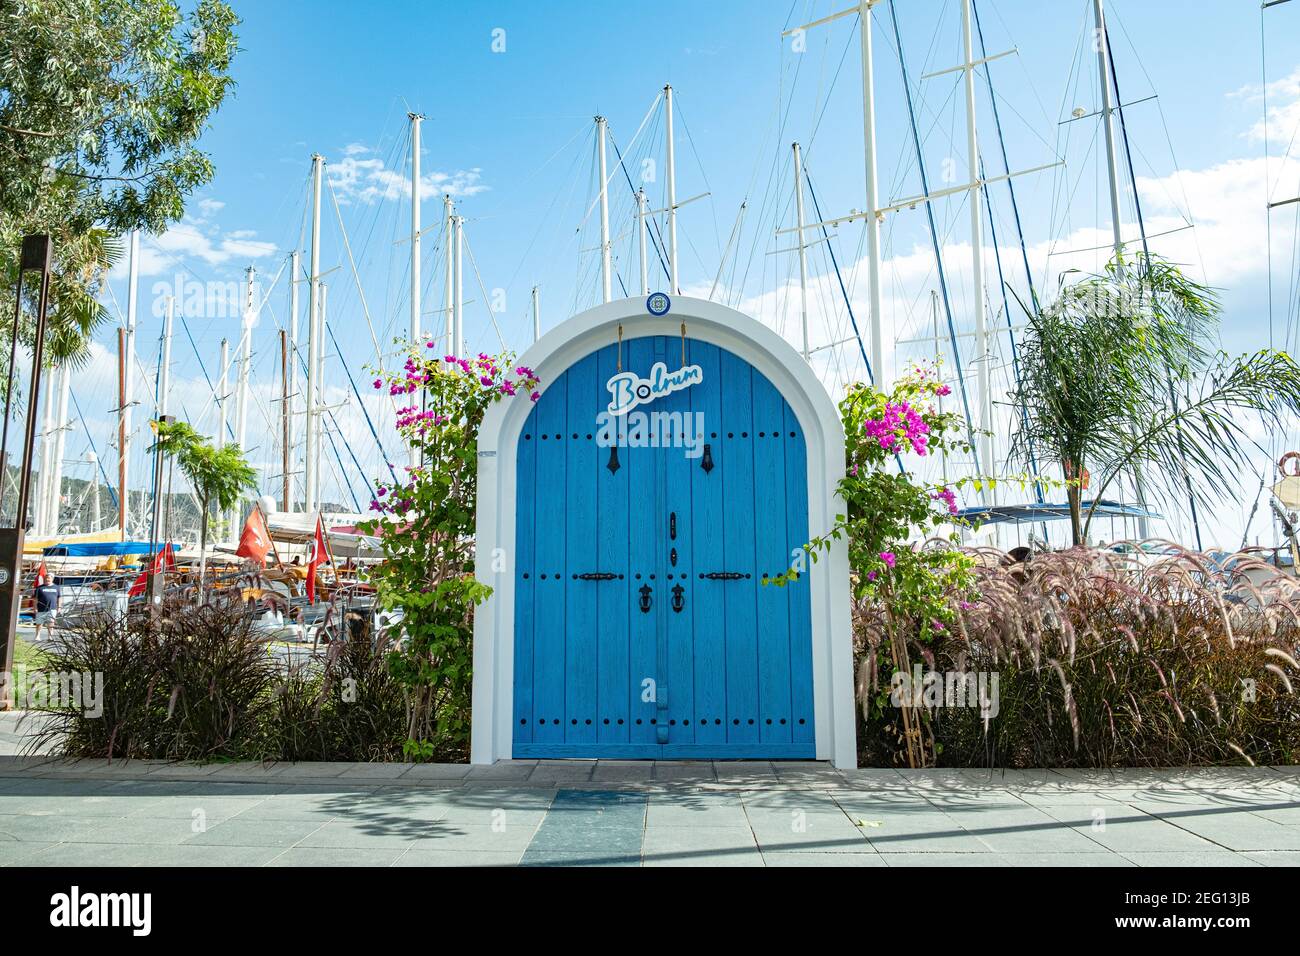 Symbolische blaue Tür mit dem Namen der Stadt Bodrum, Segelmasten und Bougainvillea Blume auf blauem Himmel Hintergrund an sonnigen Tag in Bodrum, Türkei. Stockfoto